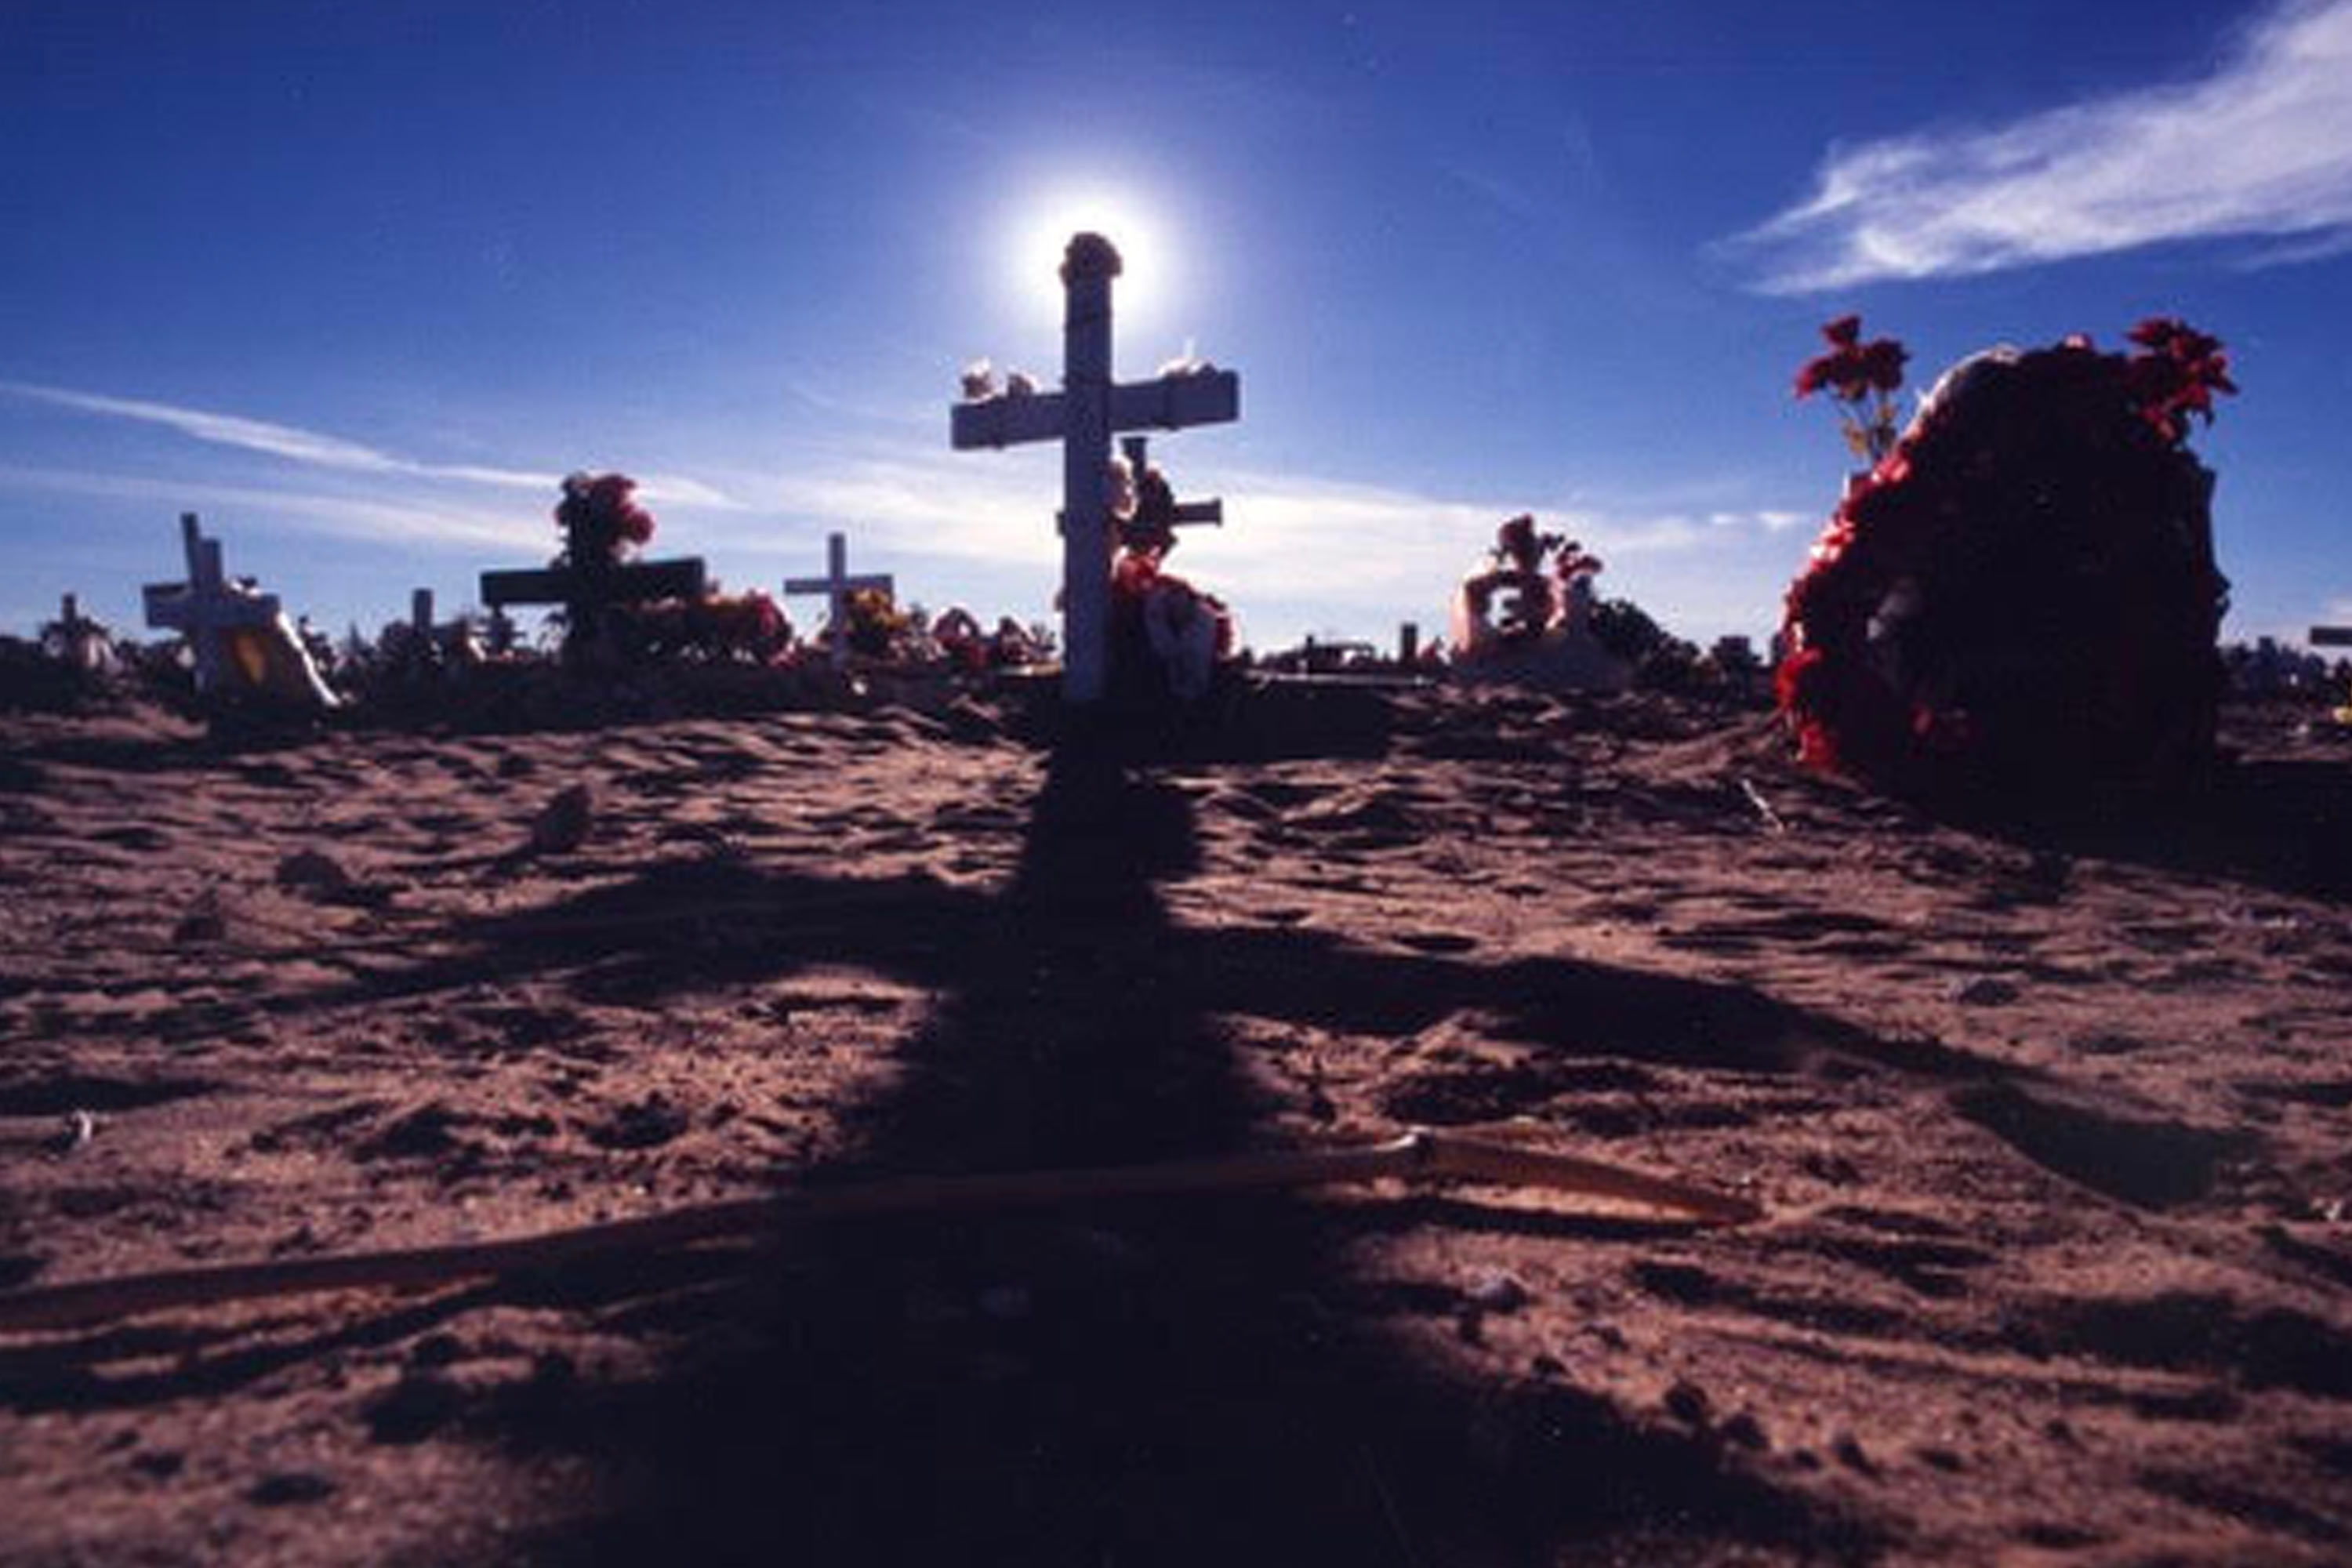 Un cementerio en Juarez, Mexico donde están enterradas muchas víctimas de la violencia fronteriza. SEÑORITA EXTRAVIADA (Mexico, 2001), courtesy of Lourdes Portillo/Xochitl Films.